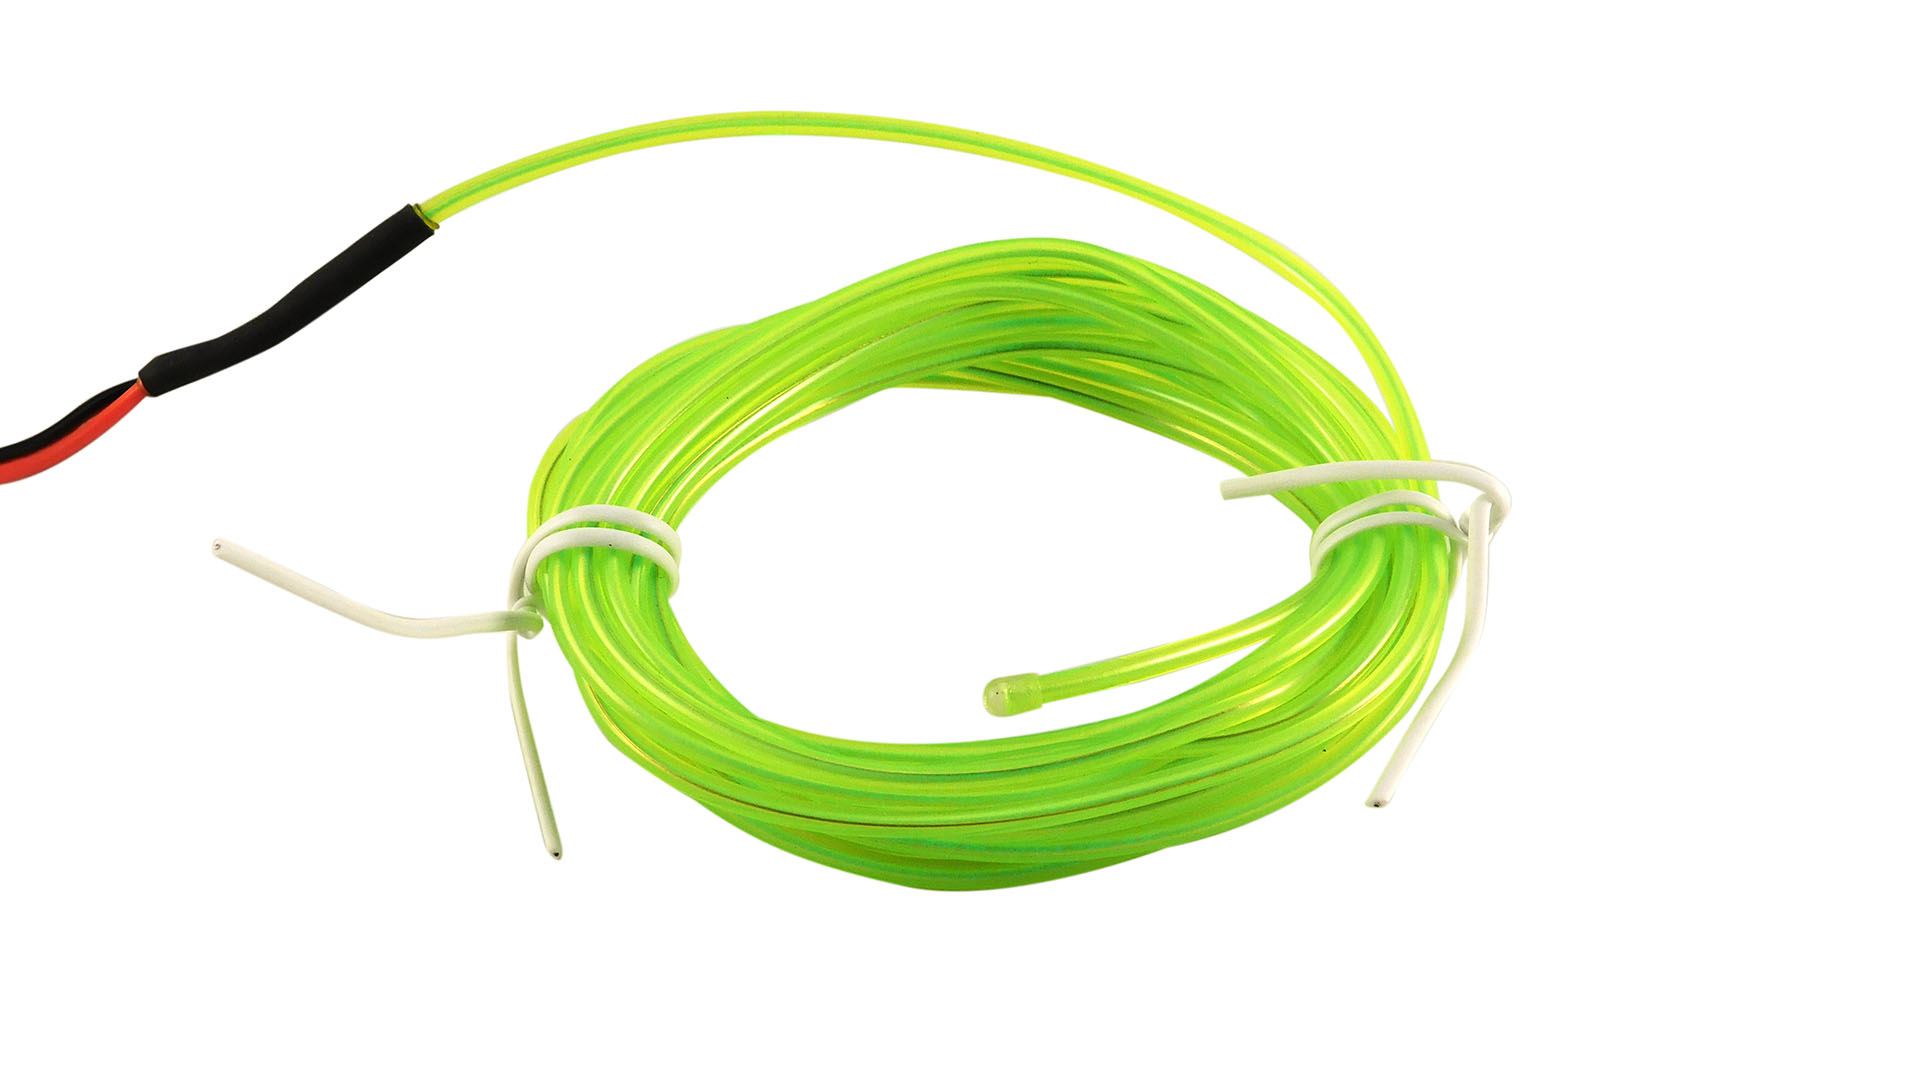 Nettigo: ELWIRA Soft El Wire 2.3 mm x 3m, with connector, żółto-zielony [ Elwira]